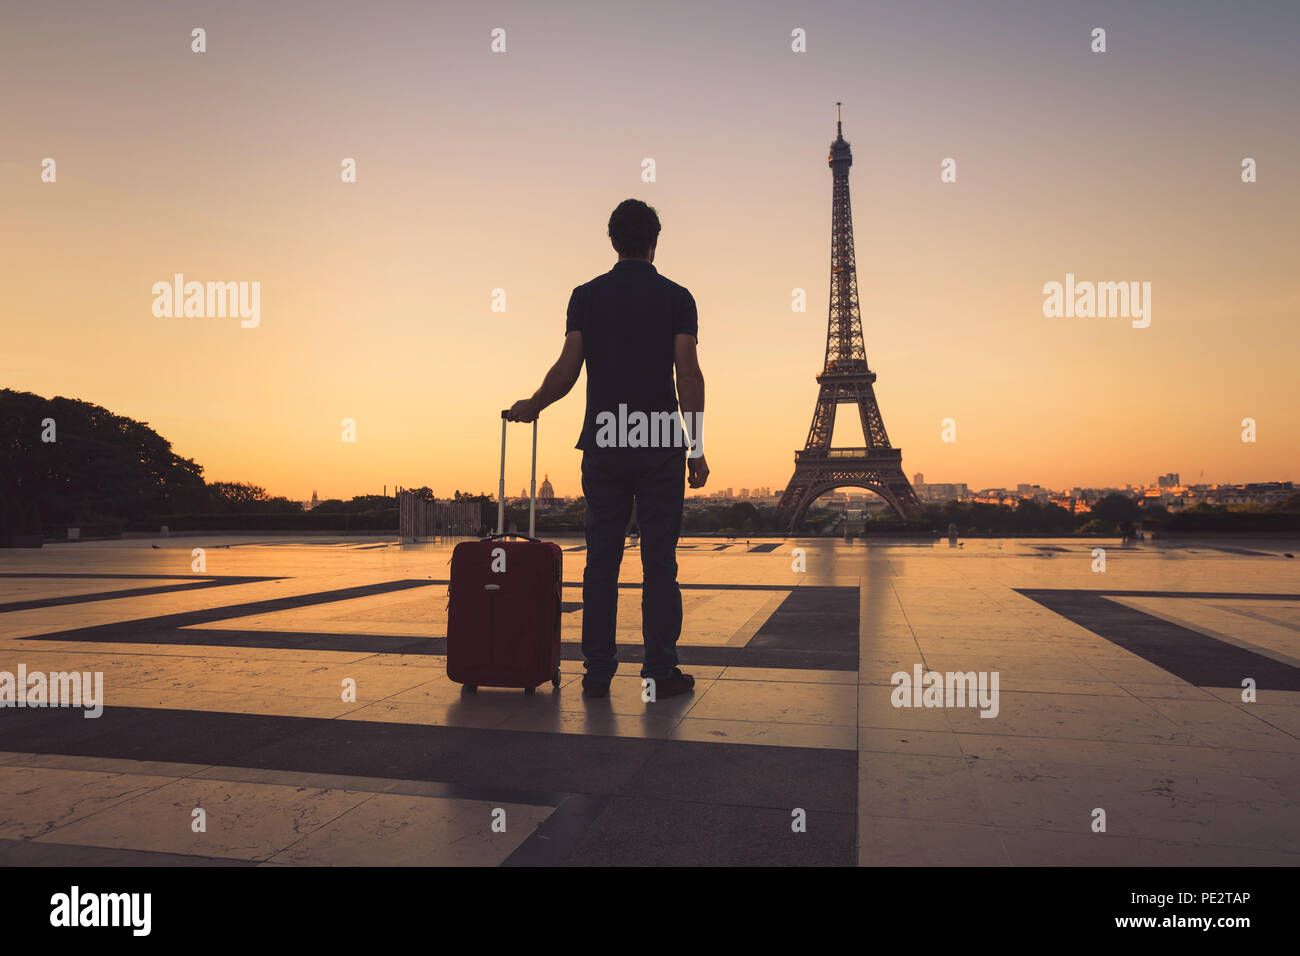 En tourisme à Paris à la Tour Eiffel, silhouette d'homme avec une assurance voyage France Banque D'Images